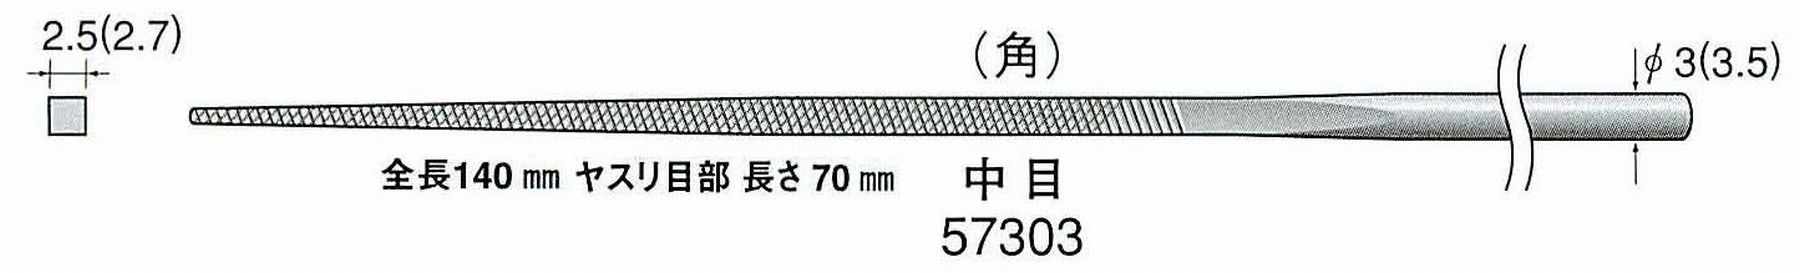 ナカニシ/NAKANISHI 精密仕上げヤスリ 角 中目 軸径(シャンク)φ3.0mm(3.5) 57303